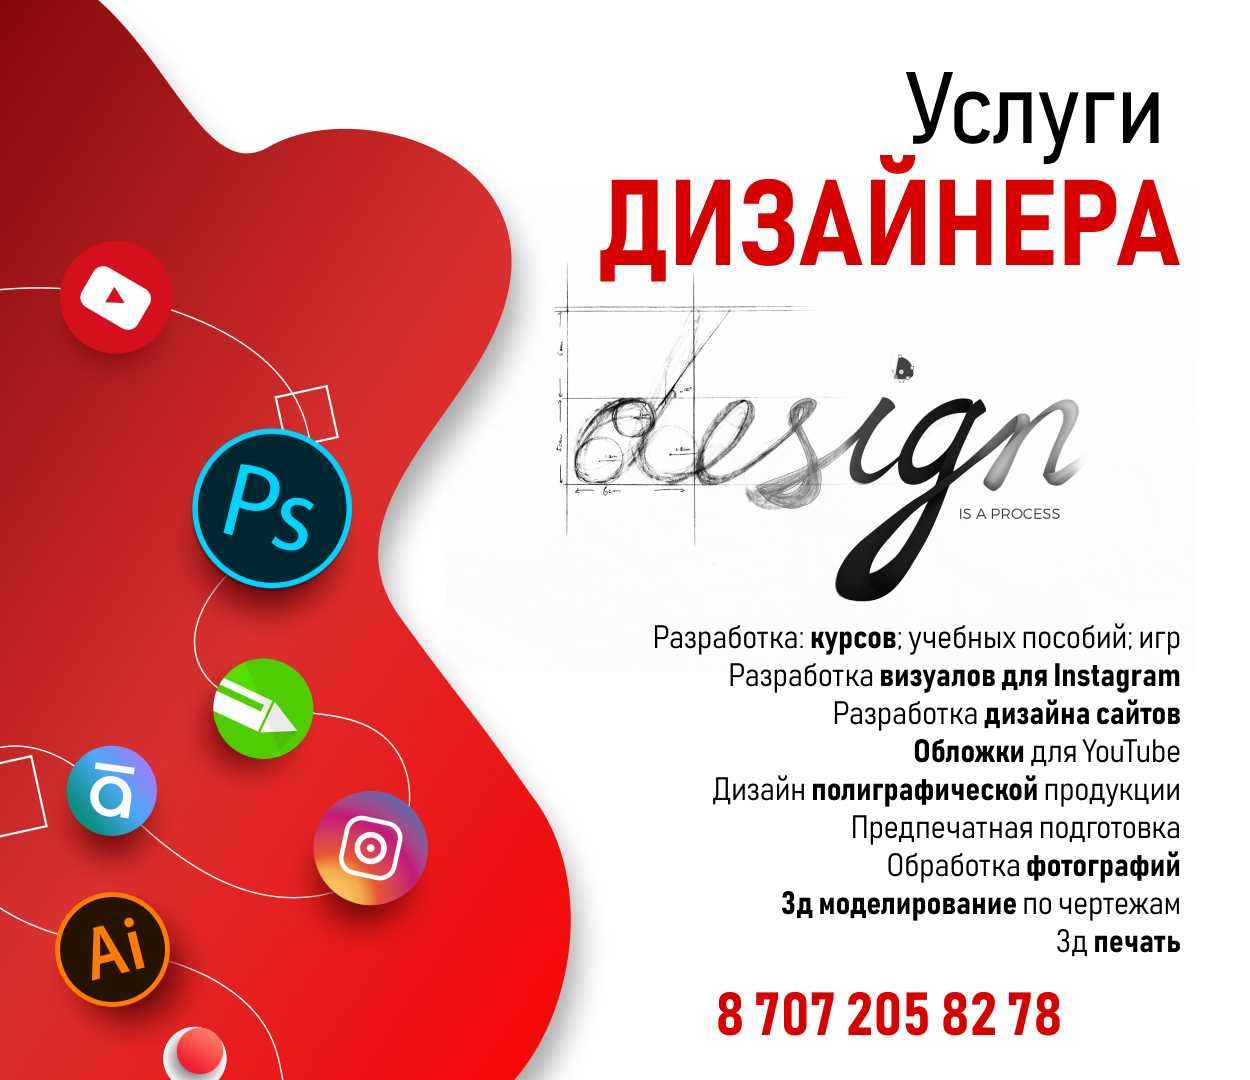 Услуги графического дизайнера, UI\UX design, разработка